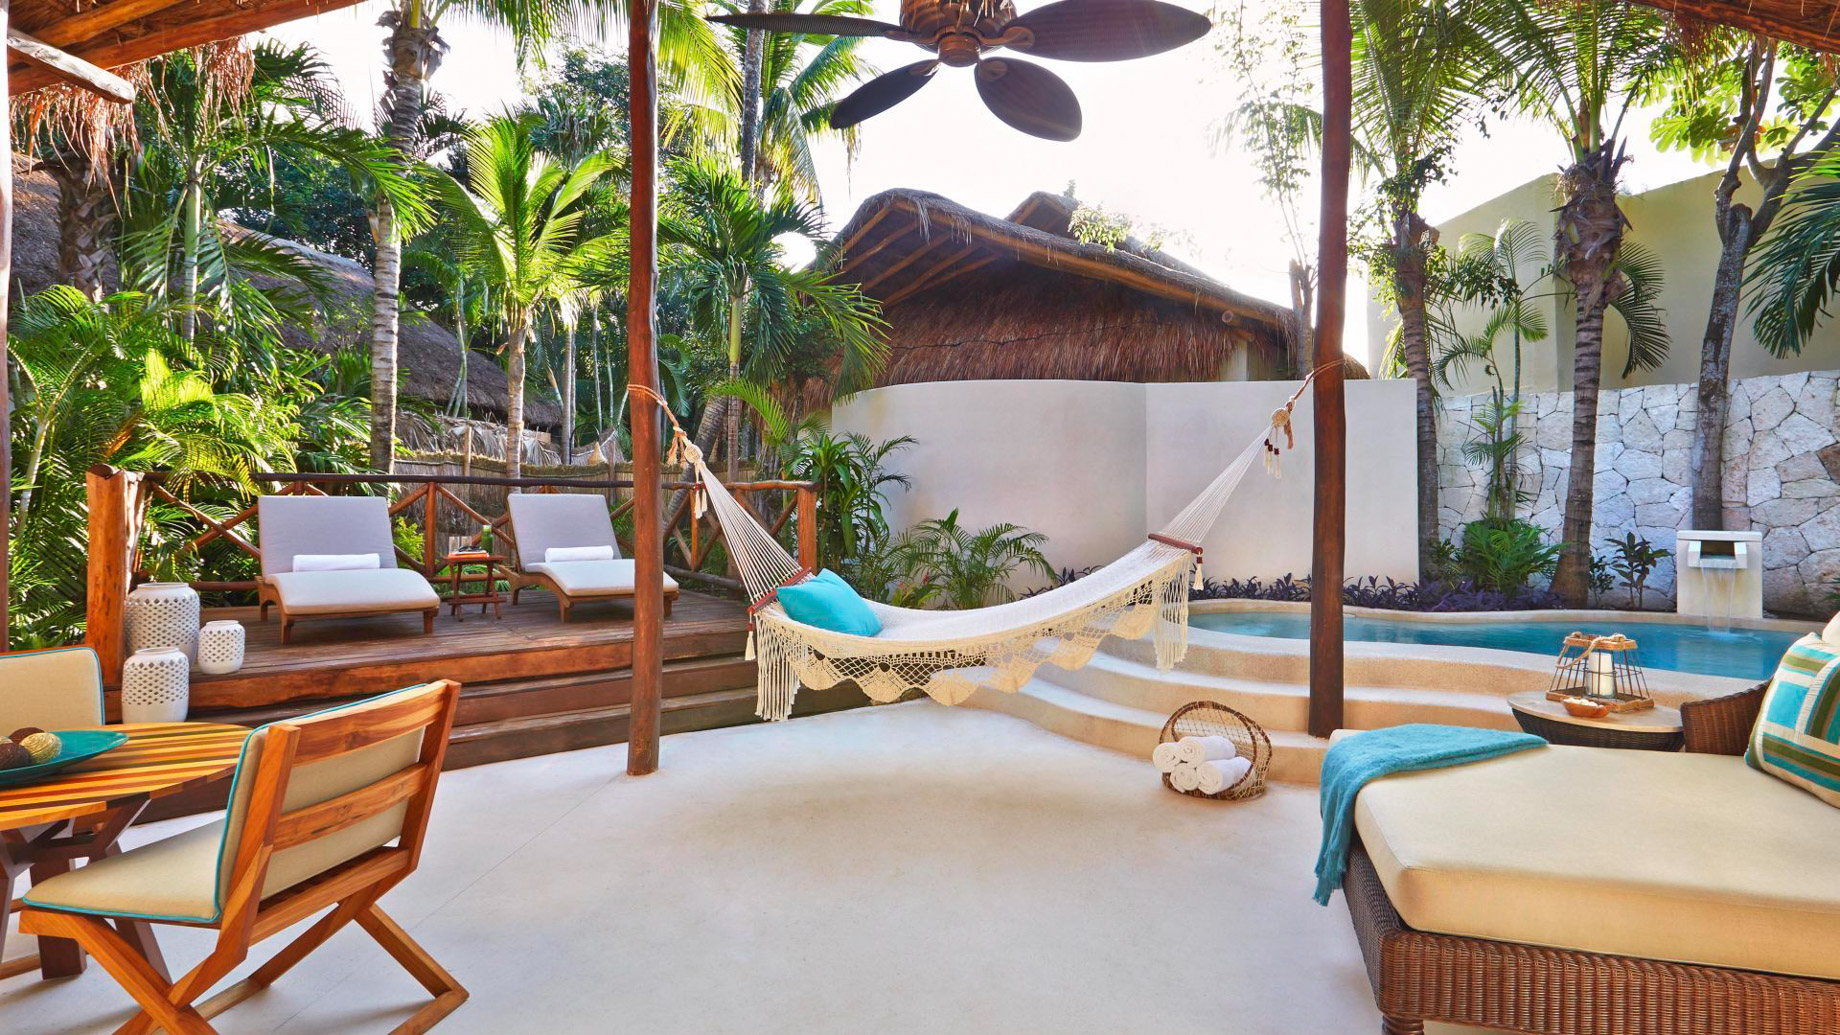 Viceroy Riviera Maya Resort – Playa del Carmen, Mexico – Signature Villa Patio